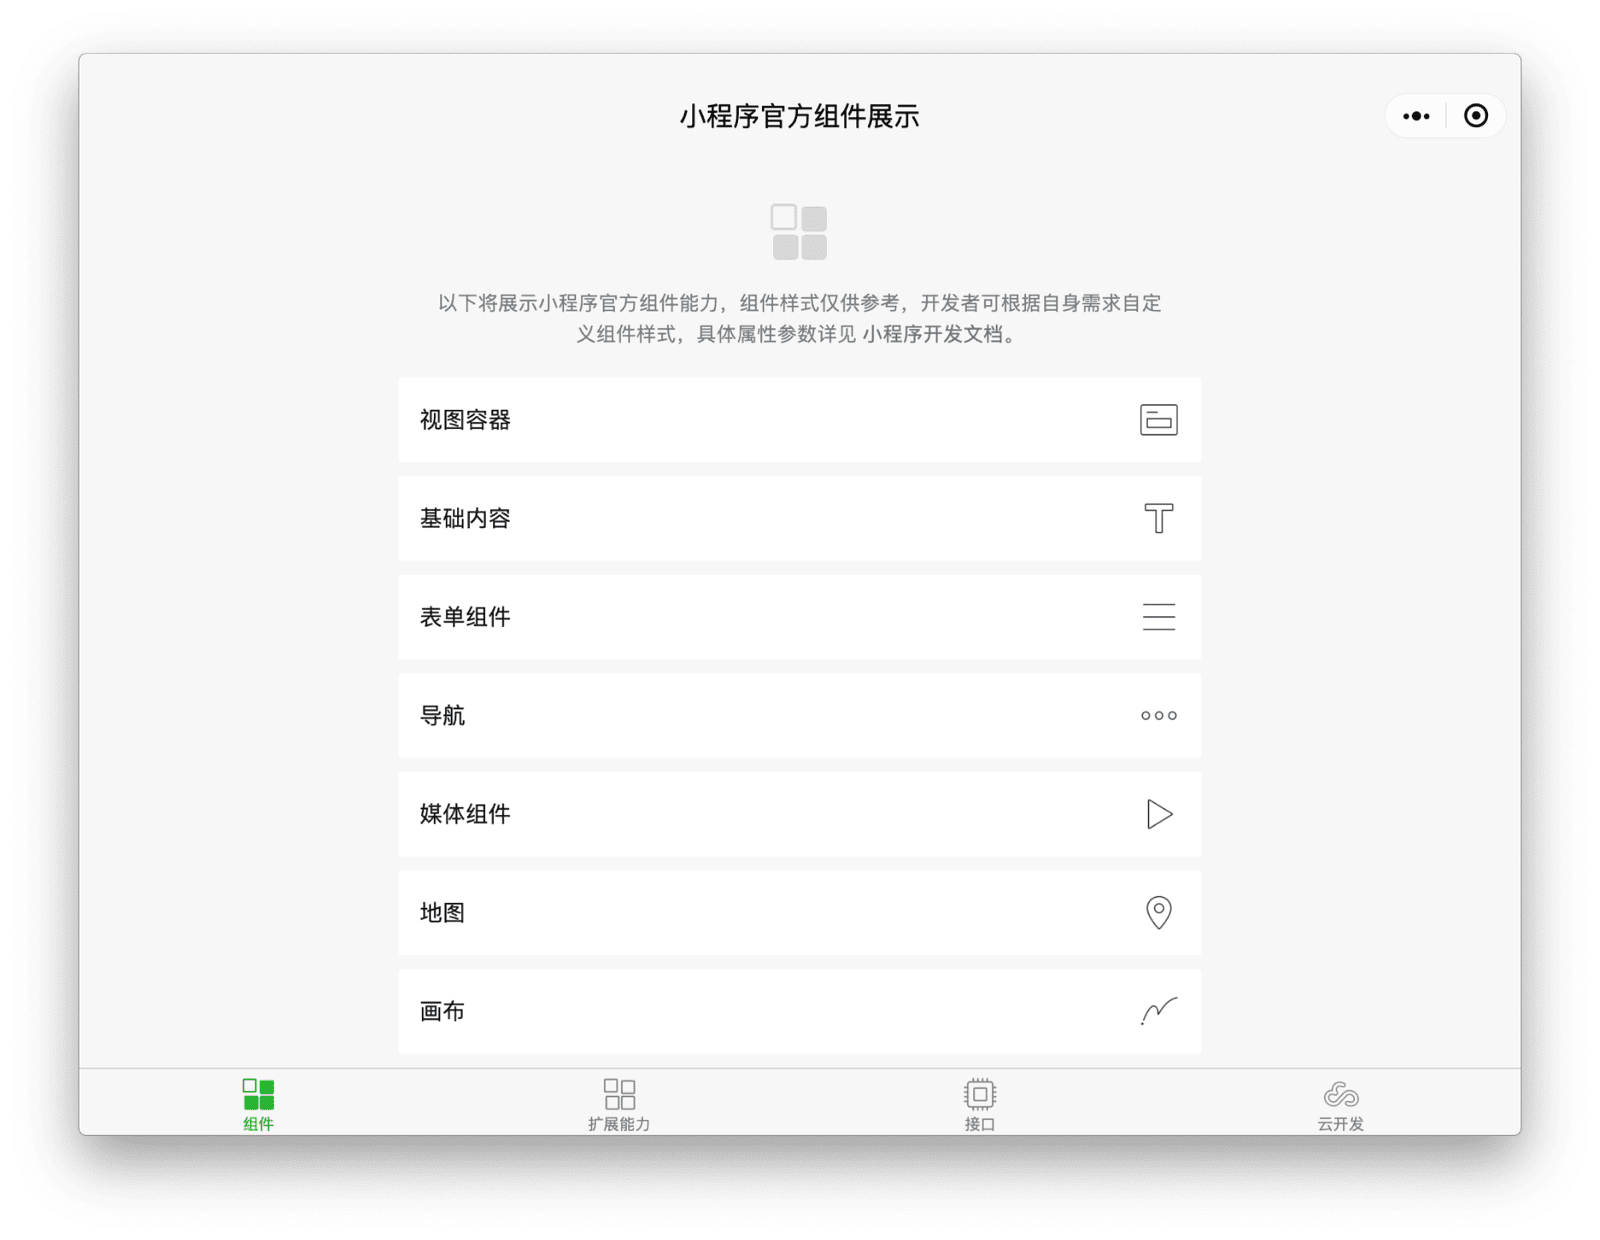 WeChat bileşenleri demo uygulaması, yeniden boyutlandırılabilen ve varsayılan olarak normal mobil ekrandan daha geniş olan duyarlı bir uygulama penceresinde yer alır.